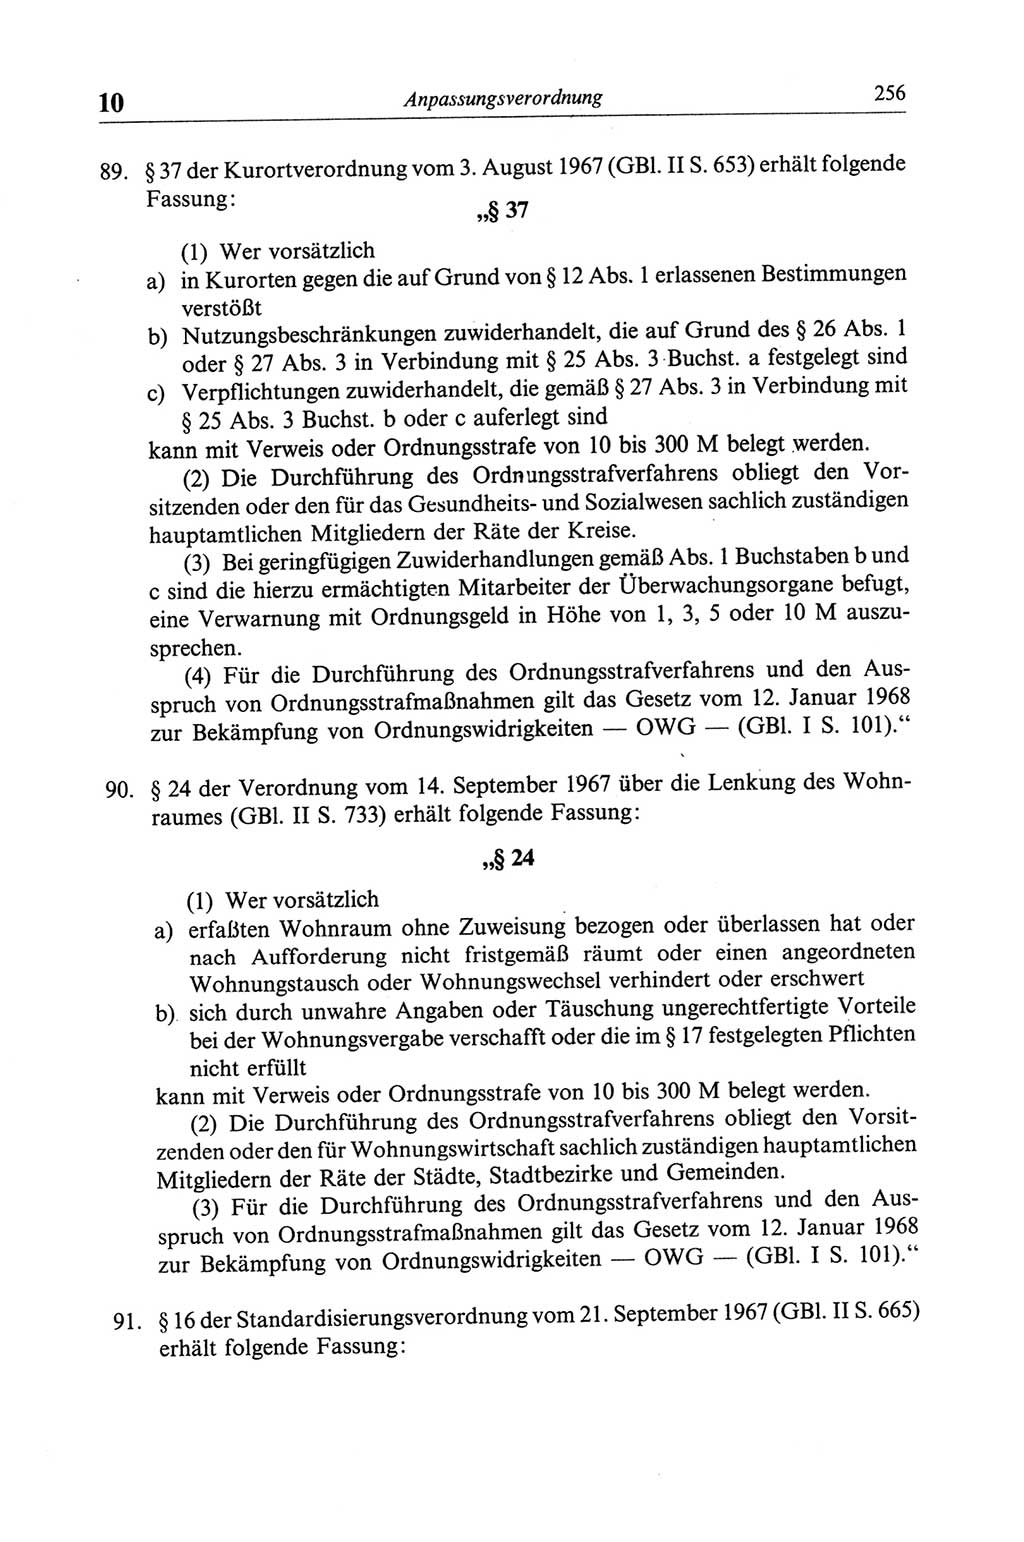 Strafgesetzbuch (StGB) der Deutschen Demokratischen Republik (DDR) und angrenzende Gesetze und Bestimmungen 1968, Seite 256 (StGB Ges. Best. DDR 1968, S. 256)